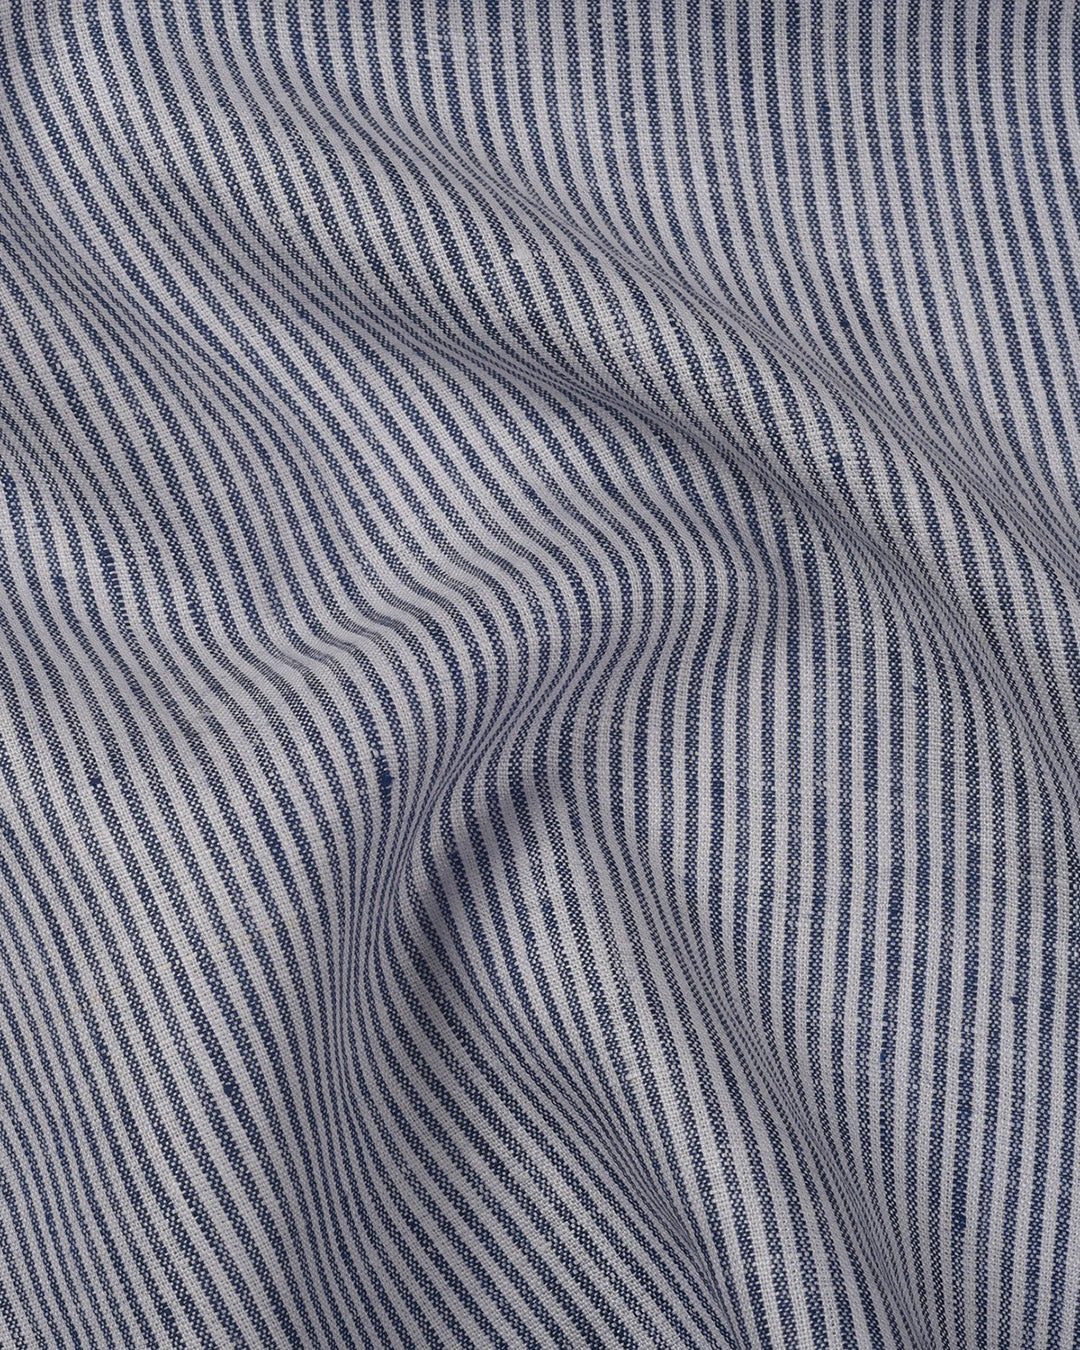 Pullover Shirt Blue White Stripes  Linen